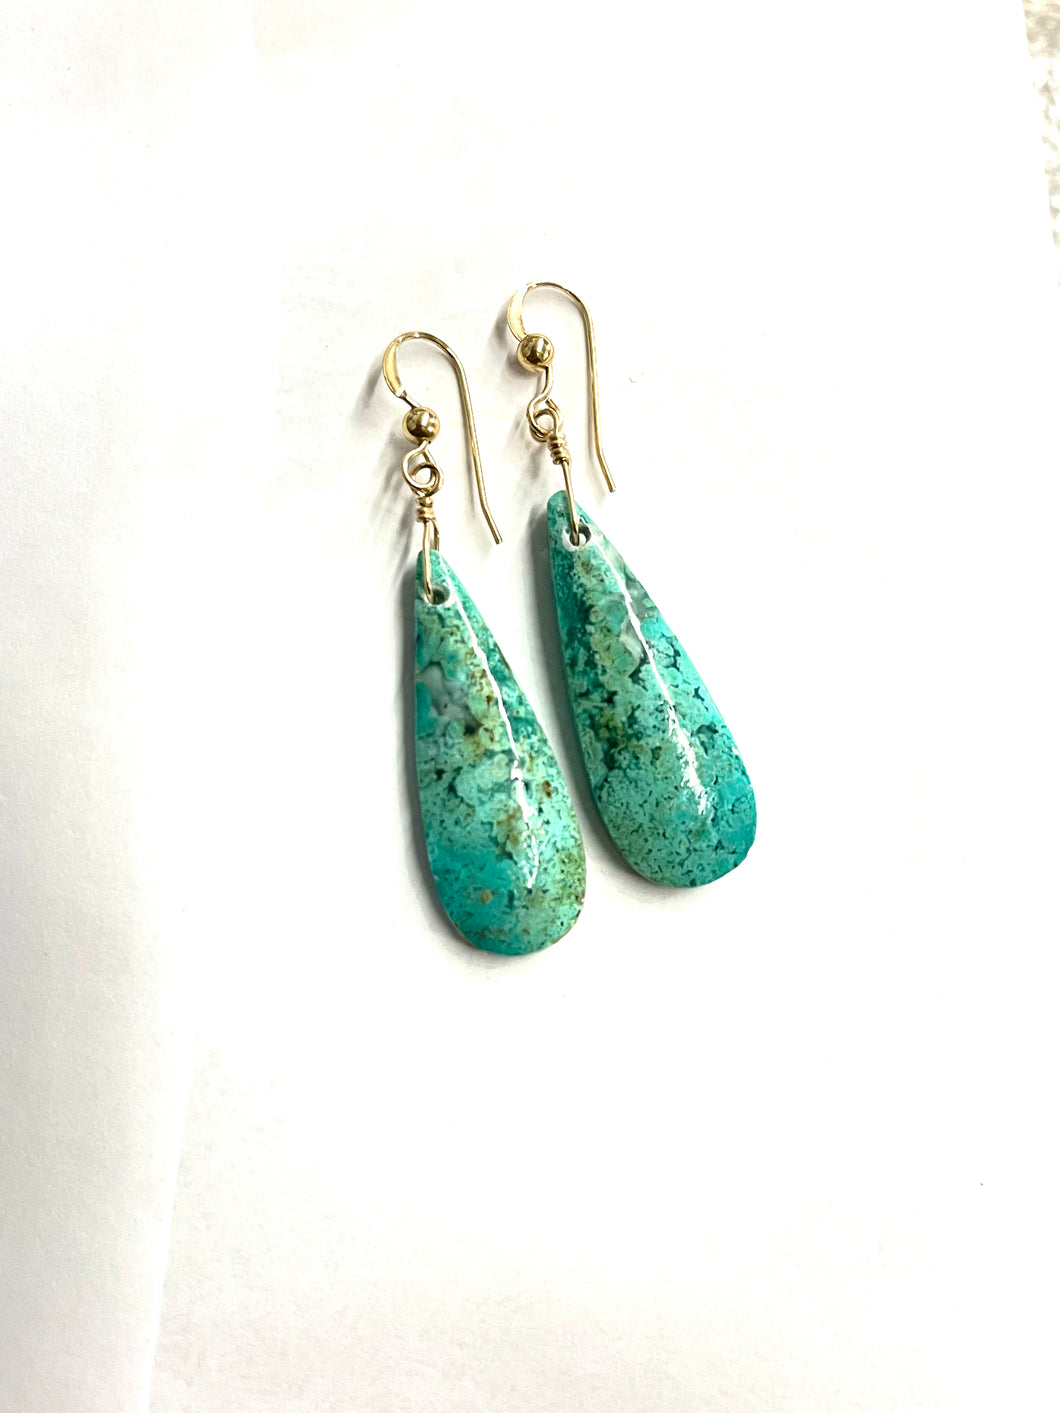 Earrings with opal wood